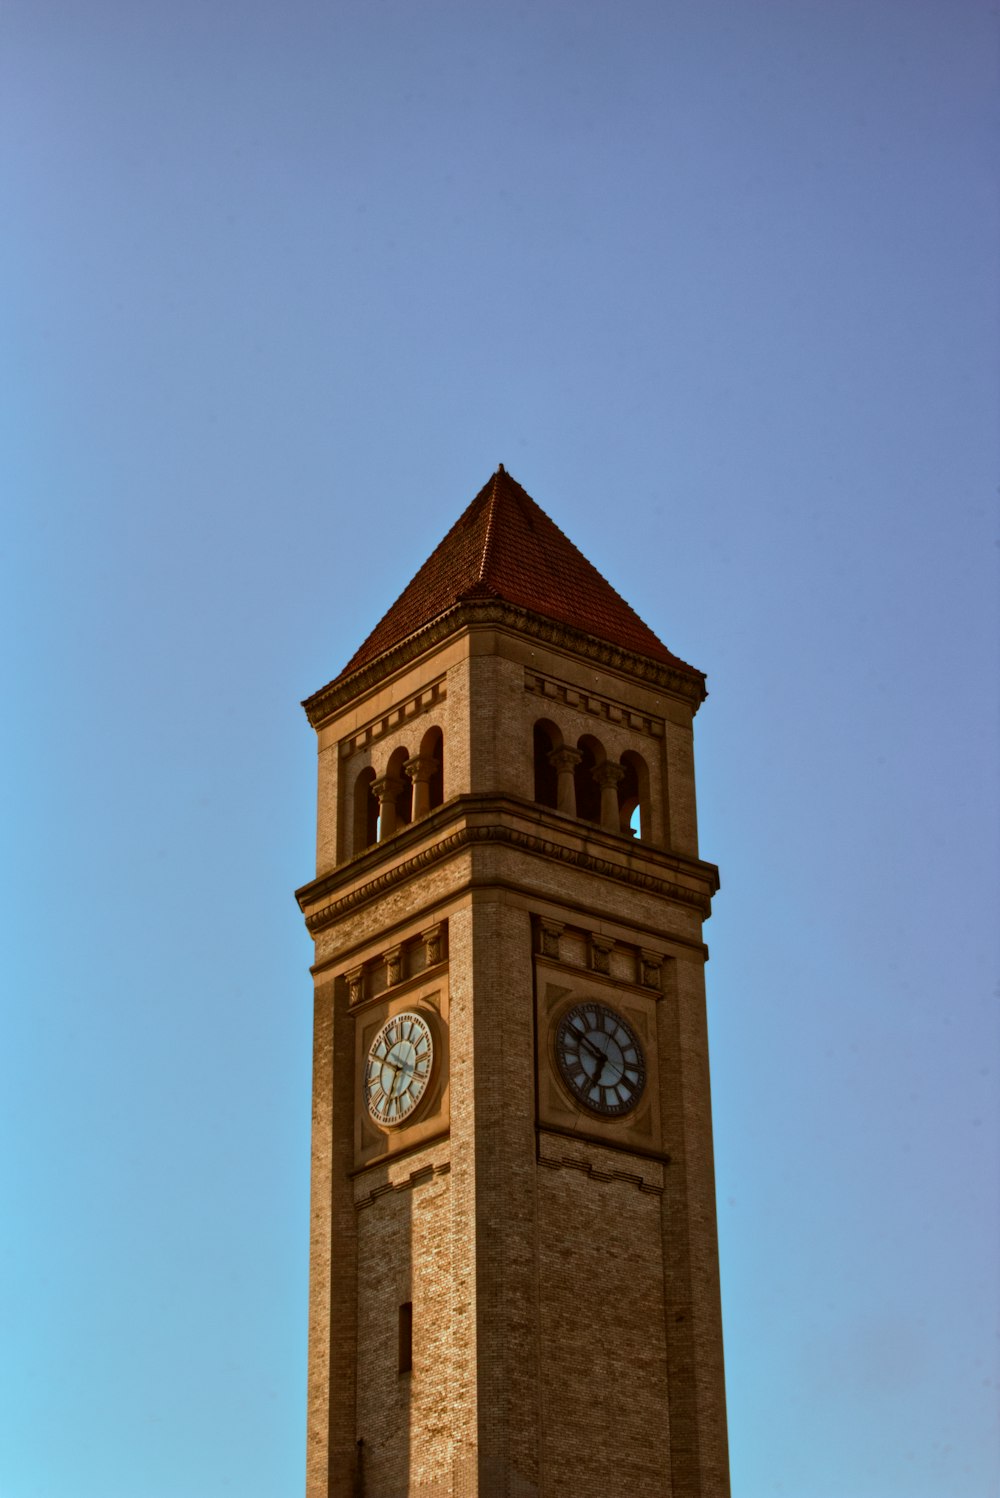 une grande tour d’horloge avec une horloge de chaque côté